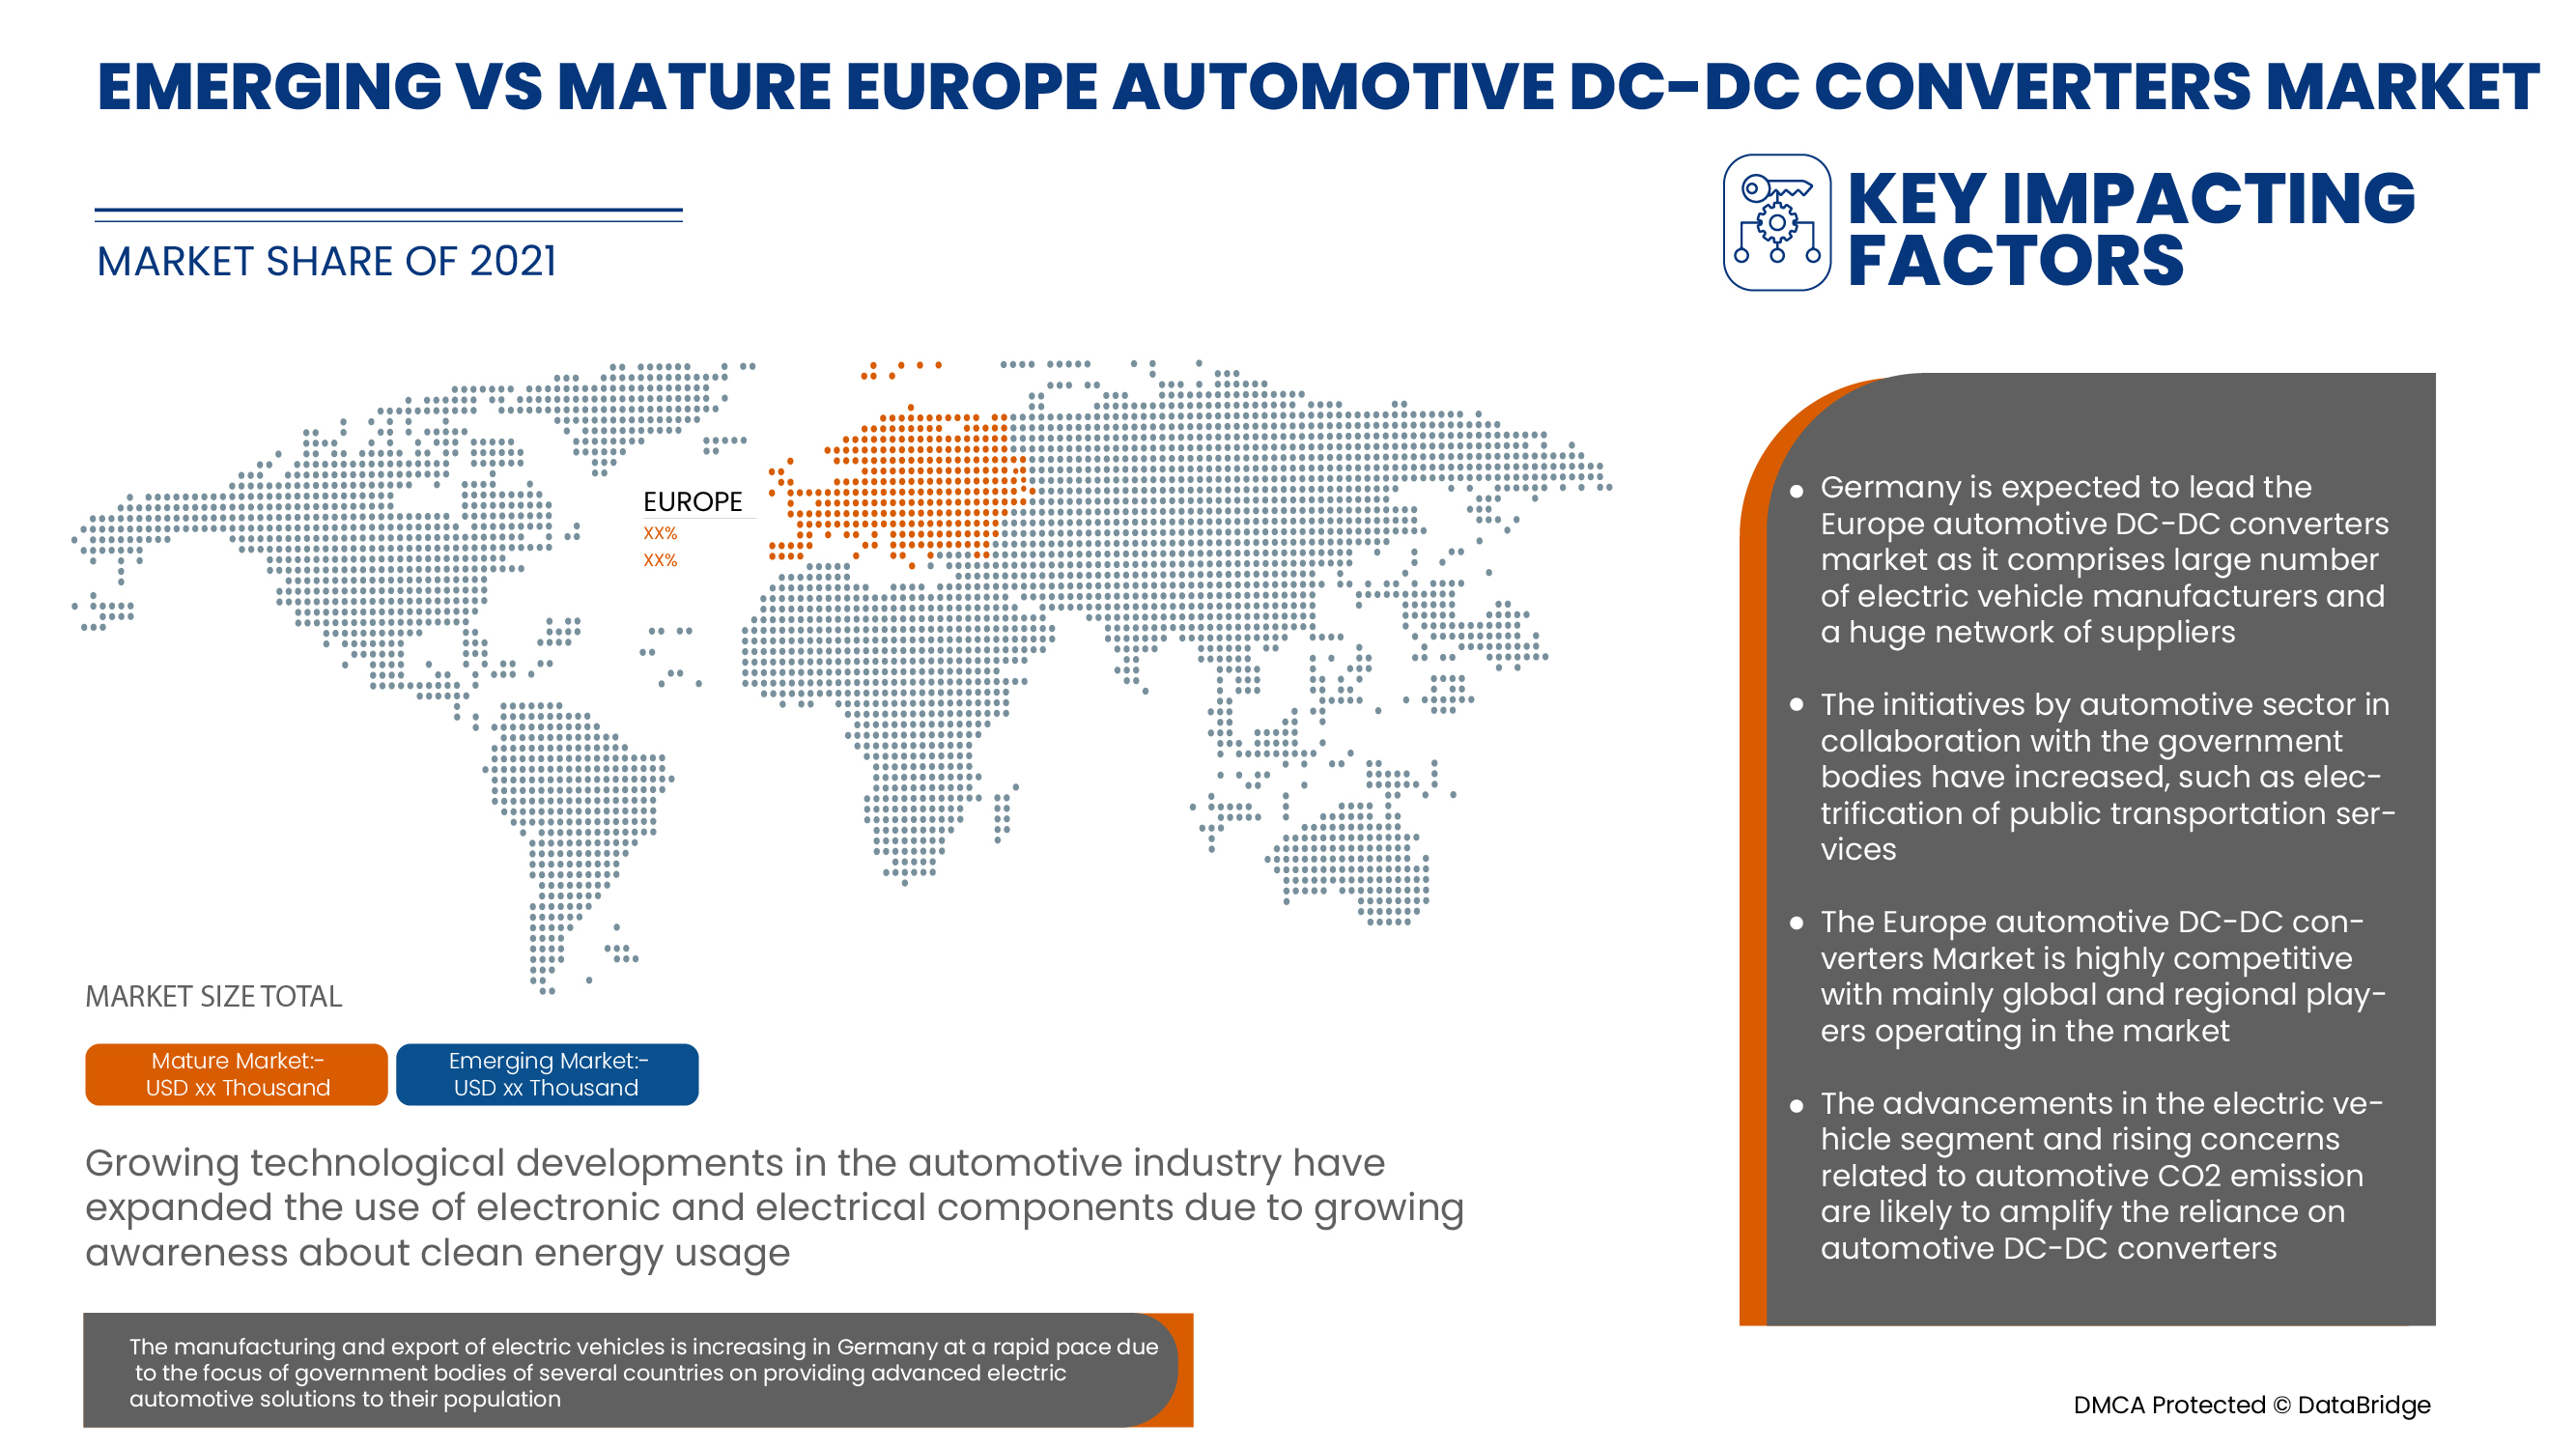 Europe Automotive DC-DC Converters Market